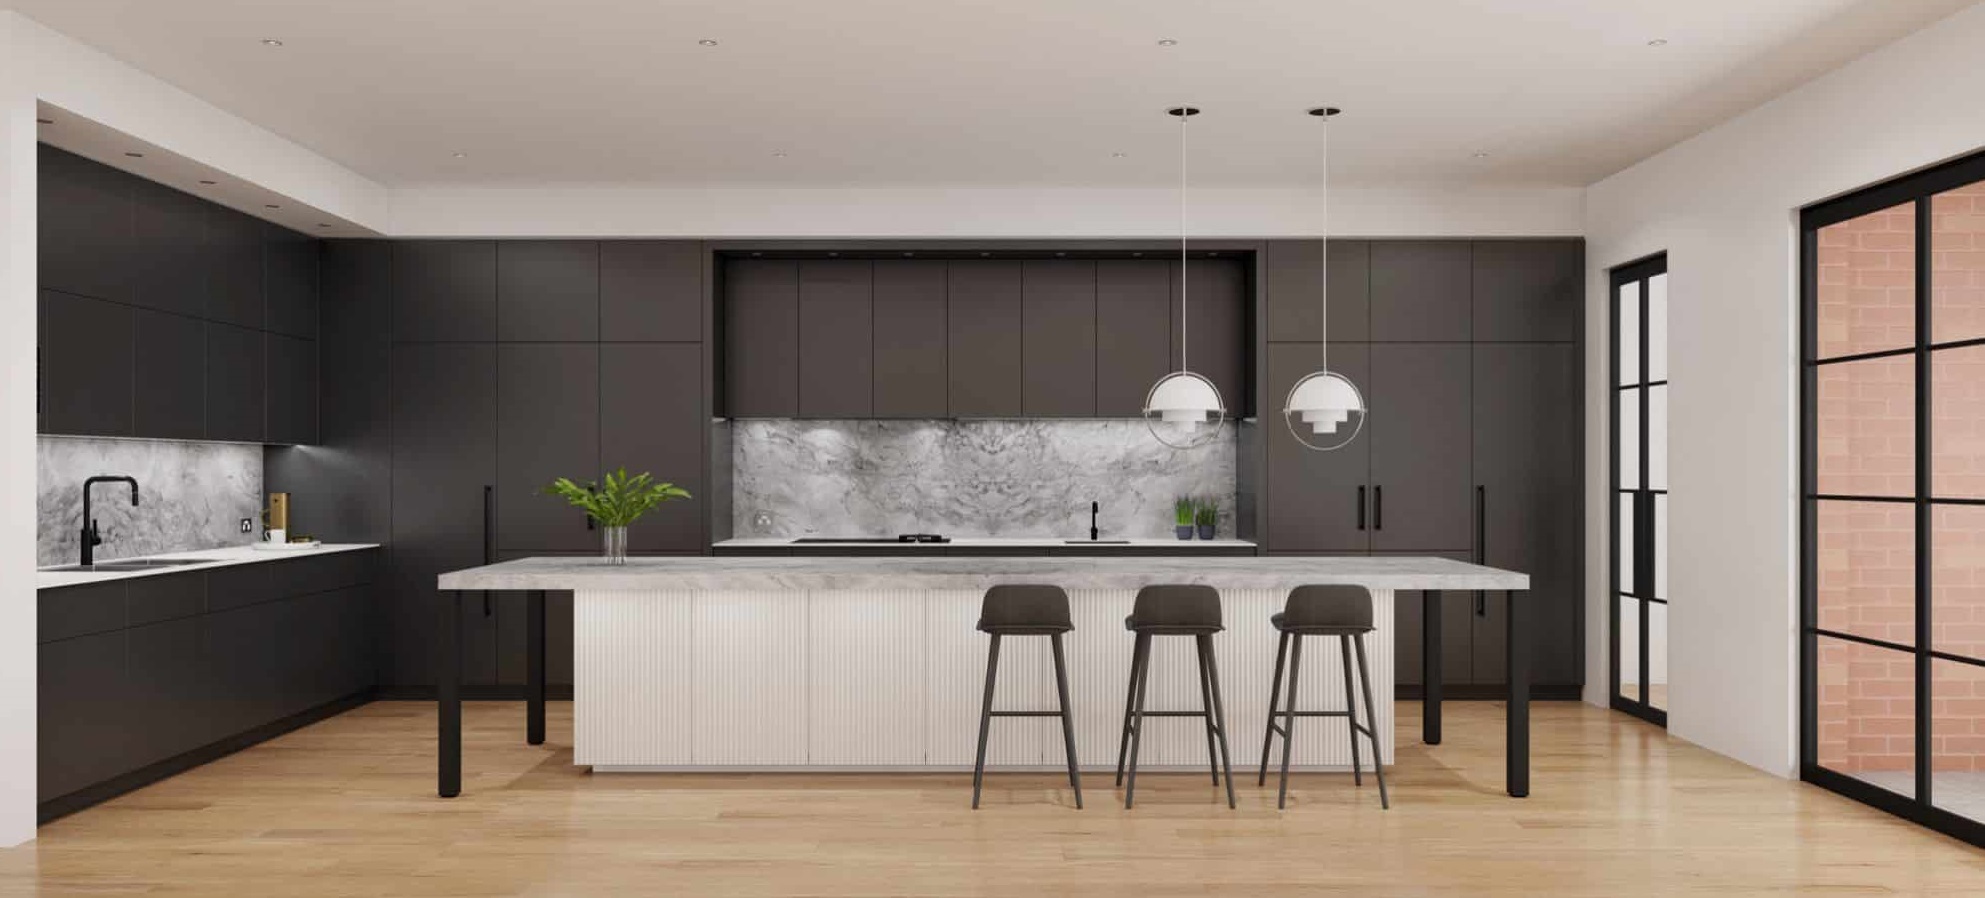 کابینت آشپزخانه طوسی روشن و تیره - جدید ترین مدل کابینت